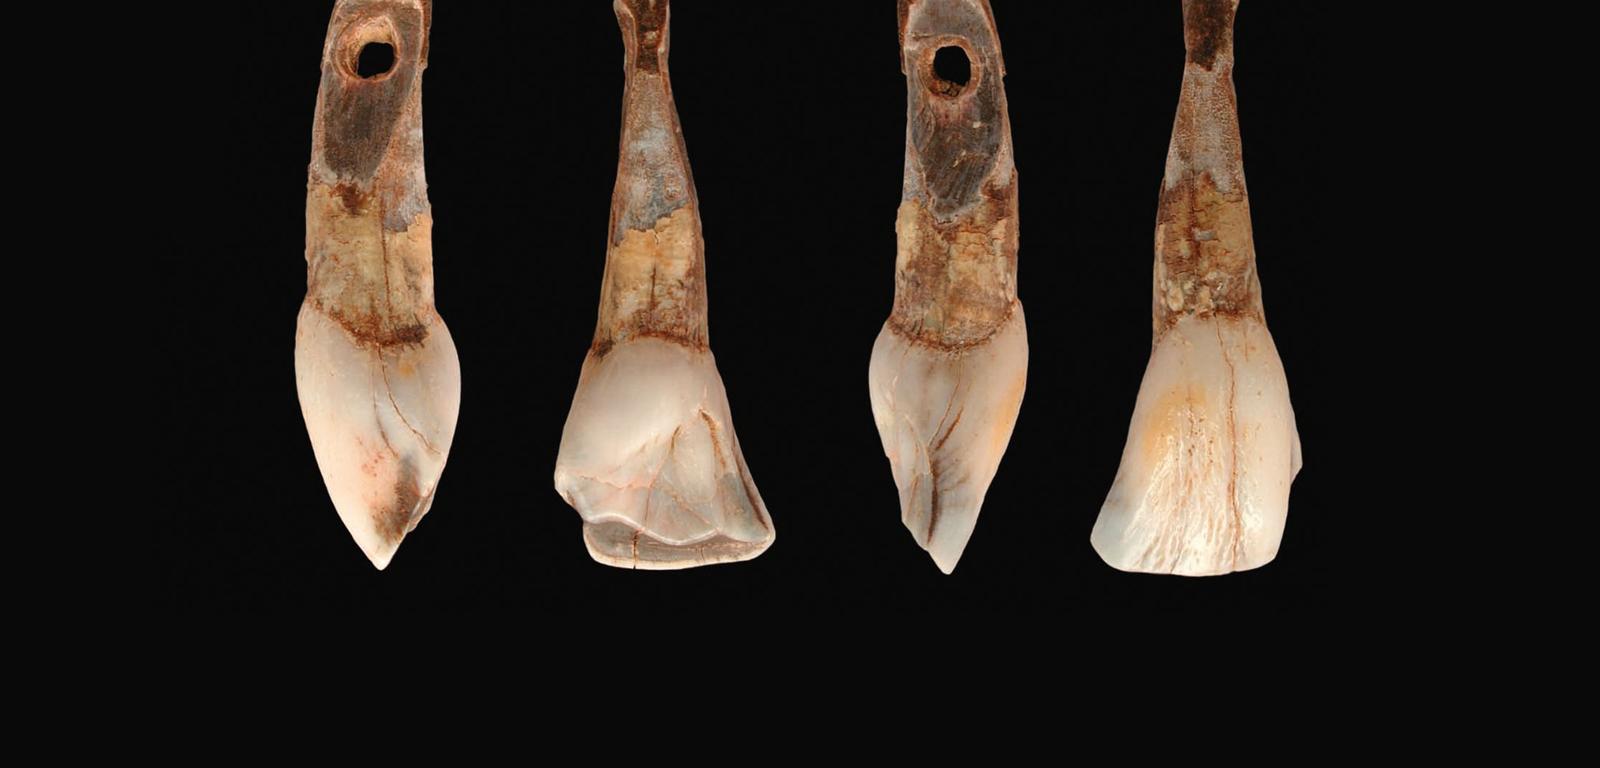 W Jaskini Borsuka w powiecie krakowskim znajdował się pochówek dziecka zmarłego 27 tys. lat temu, któremu na drogę w zaświaty dano naszyjnik z zębów upolowanych zwierząt.